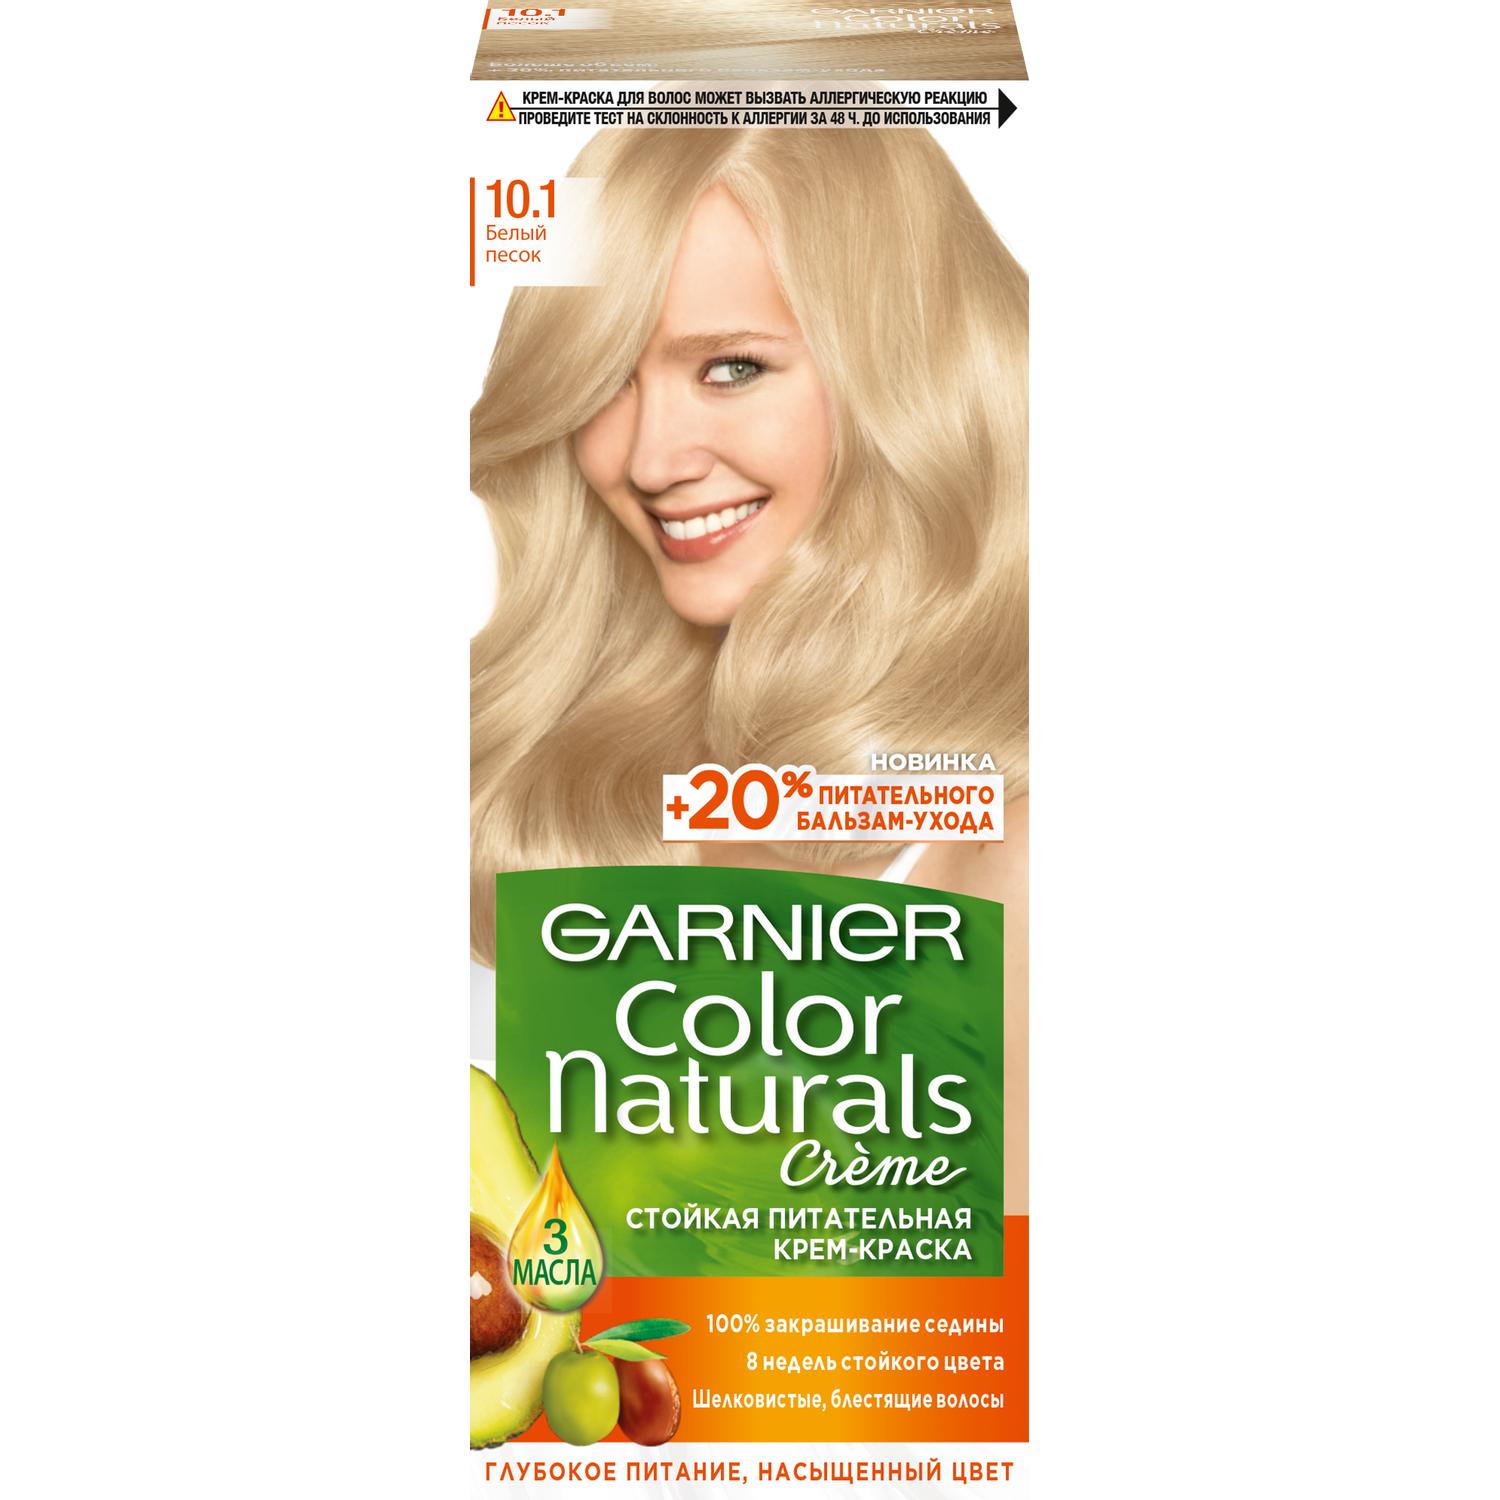 фото Крем-краска для волос garnier color naturals 10.1 белый песок 110 мл